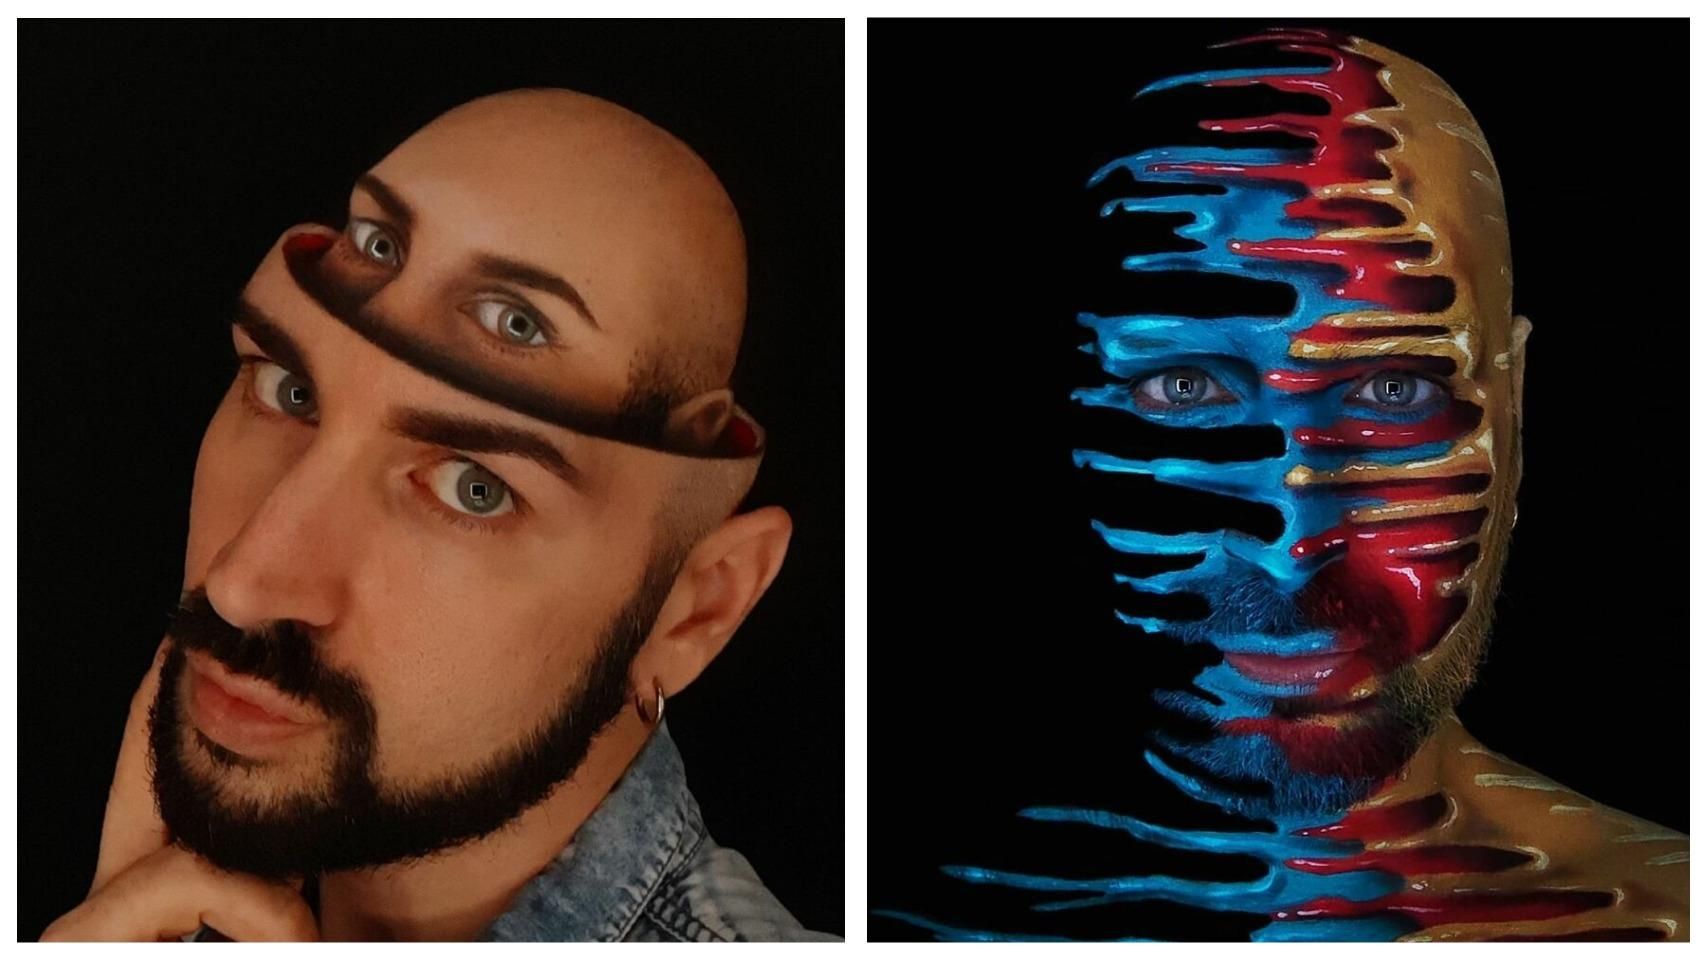 Тело как холст: итальянский визажист создает удивительные оптические иллюзии на себе - Life